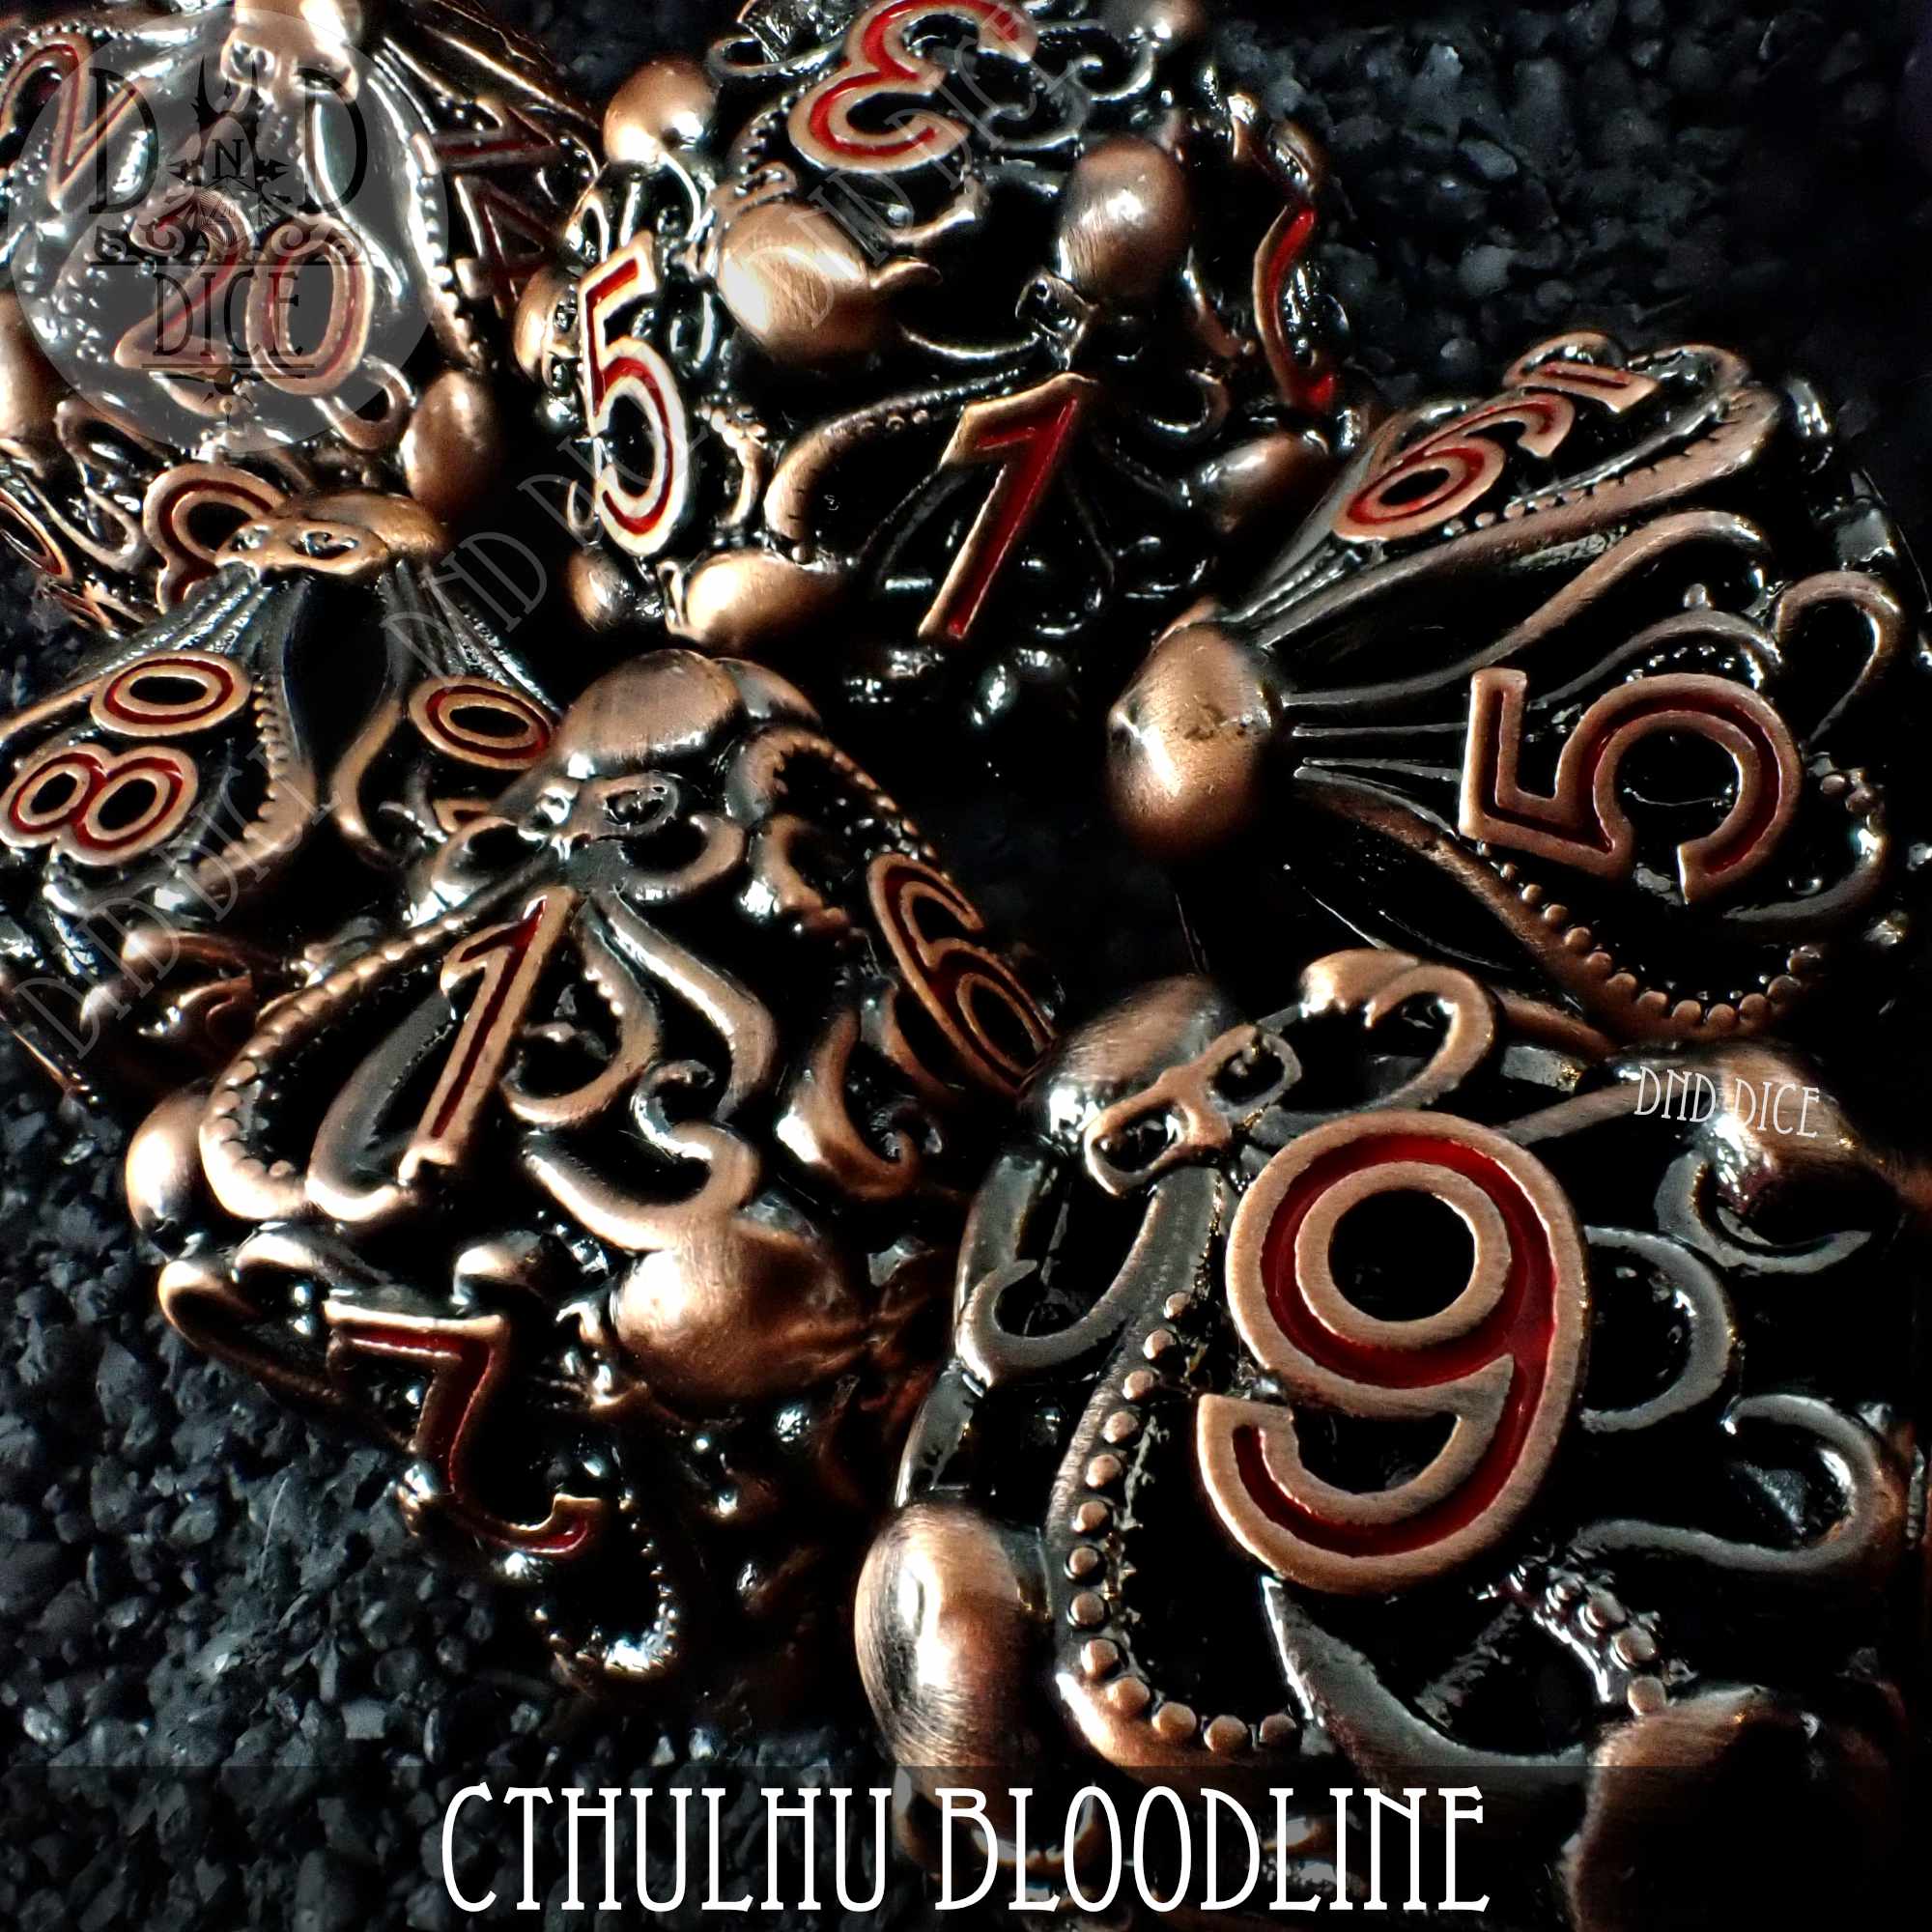 Cthulhu Bloodline Metal Dice Set (Gift Box)